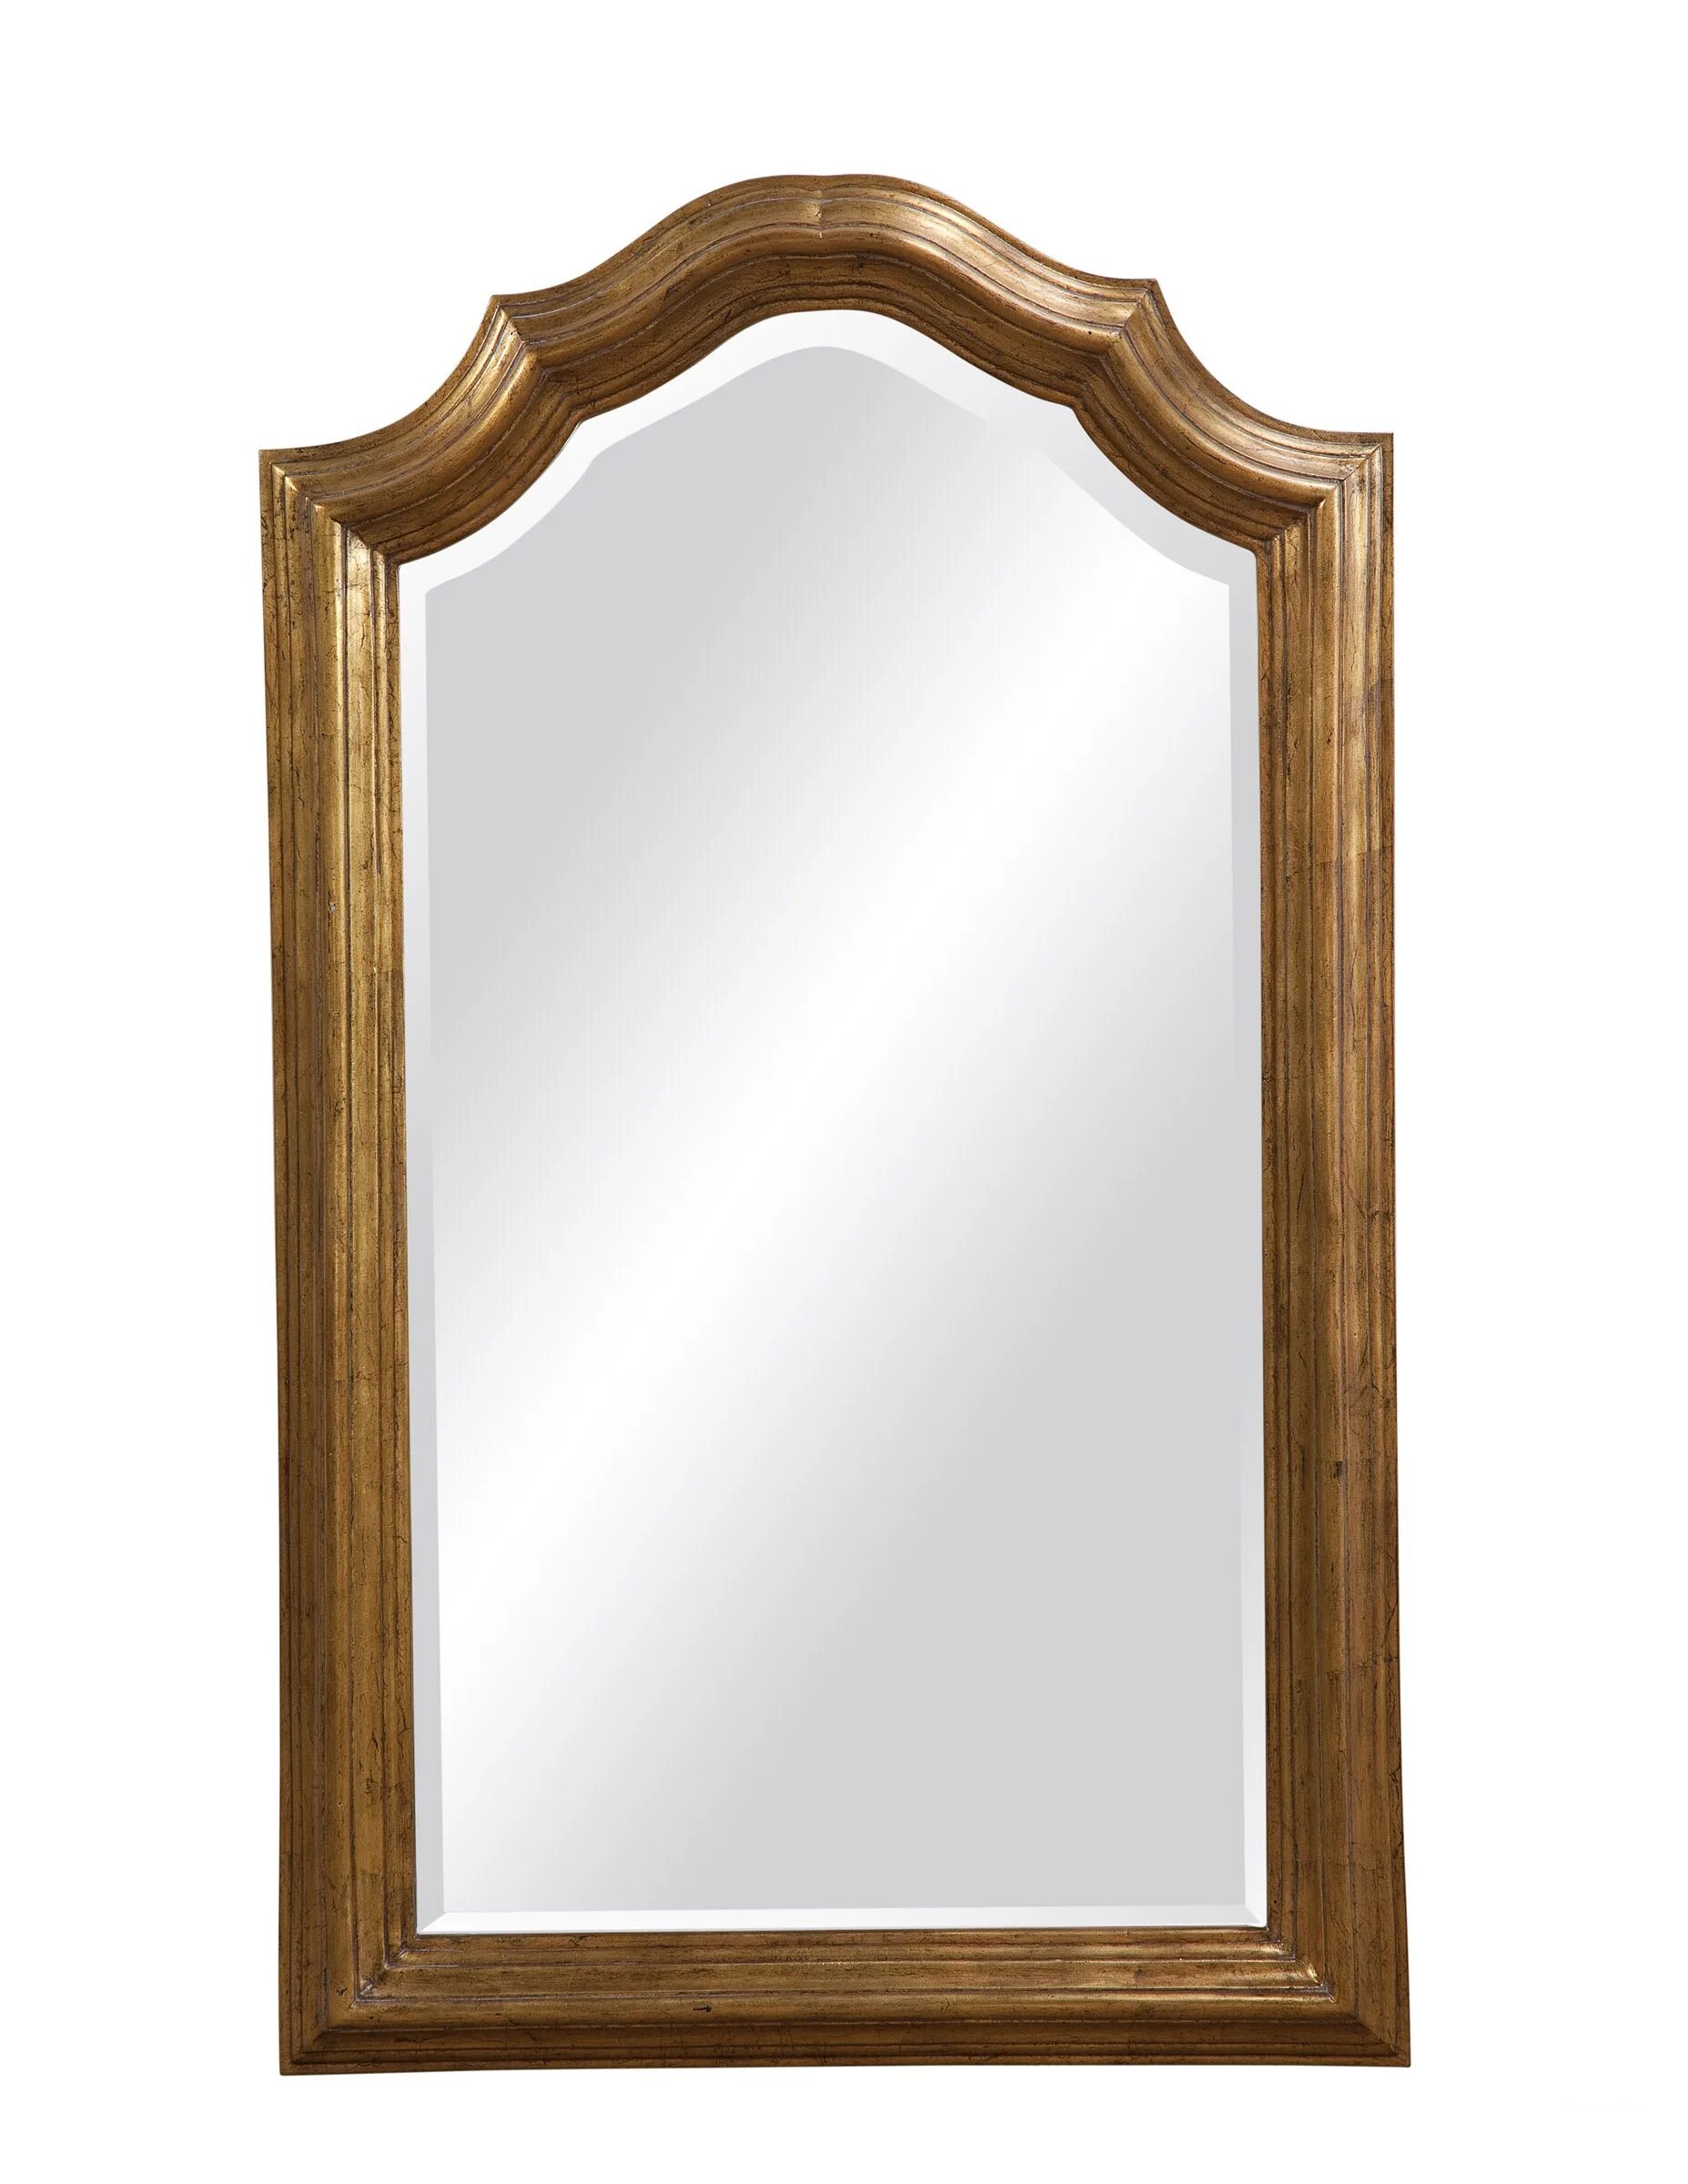 Зеркало настенное в деревянной раме. Зеркало в раме для прихожей. Настенные зеркала небольшие. Зеркало в деревянной раме для прихожей.